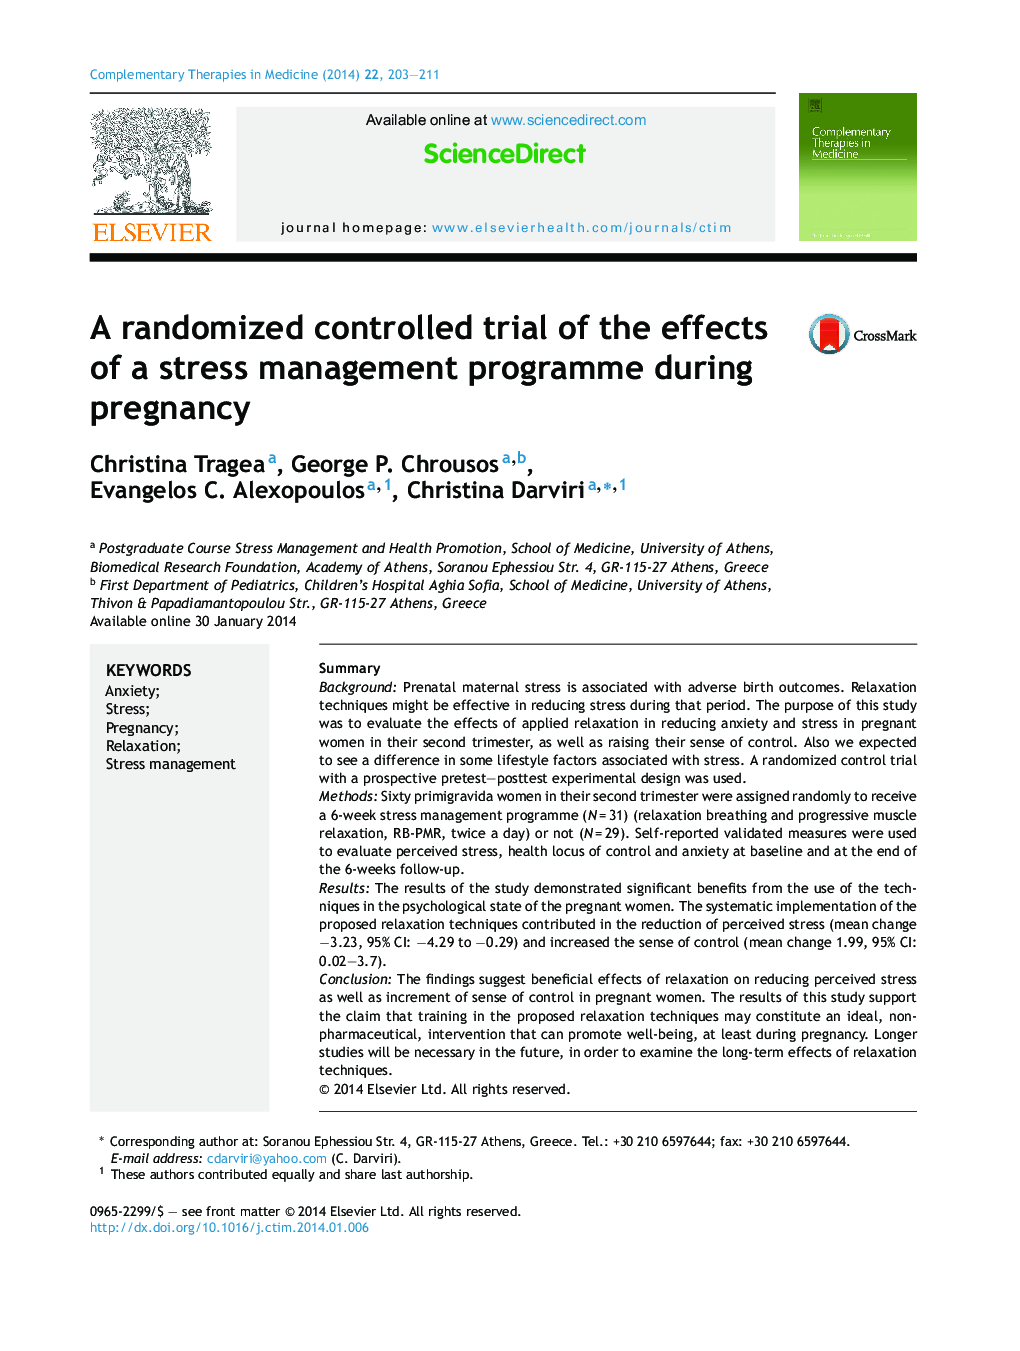 یک کارآزمایی کنترل شده تصادفی از اثرات برنامه مدیریت استرس در دوران بارداری 